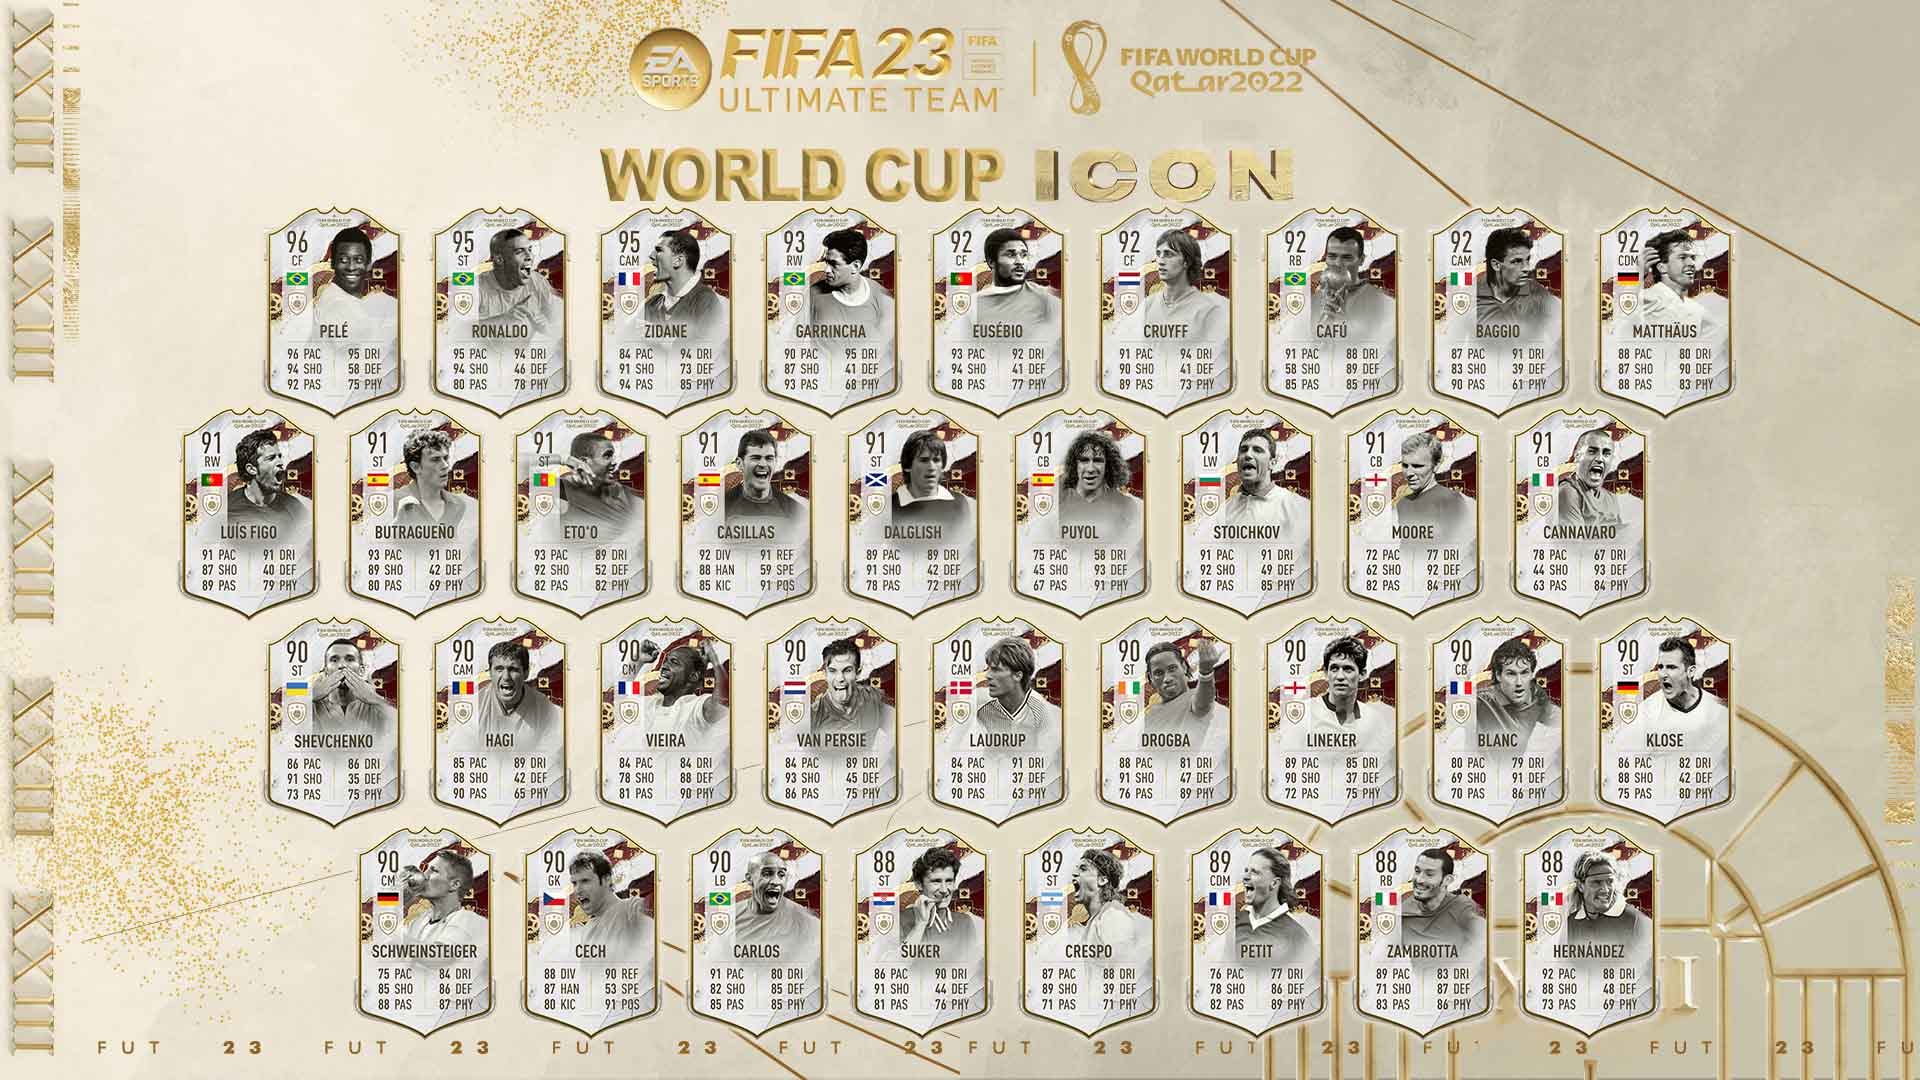 Bilder zu FIFA 23: World Cup Icons Team 3 ist da - Alle WM Ikonen, Leaks und Infos im Überblick